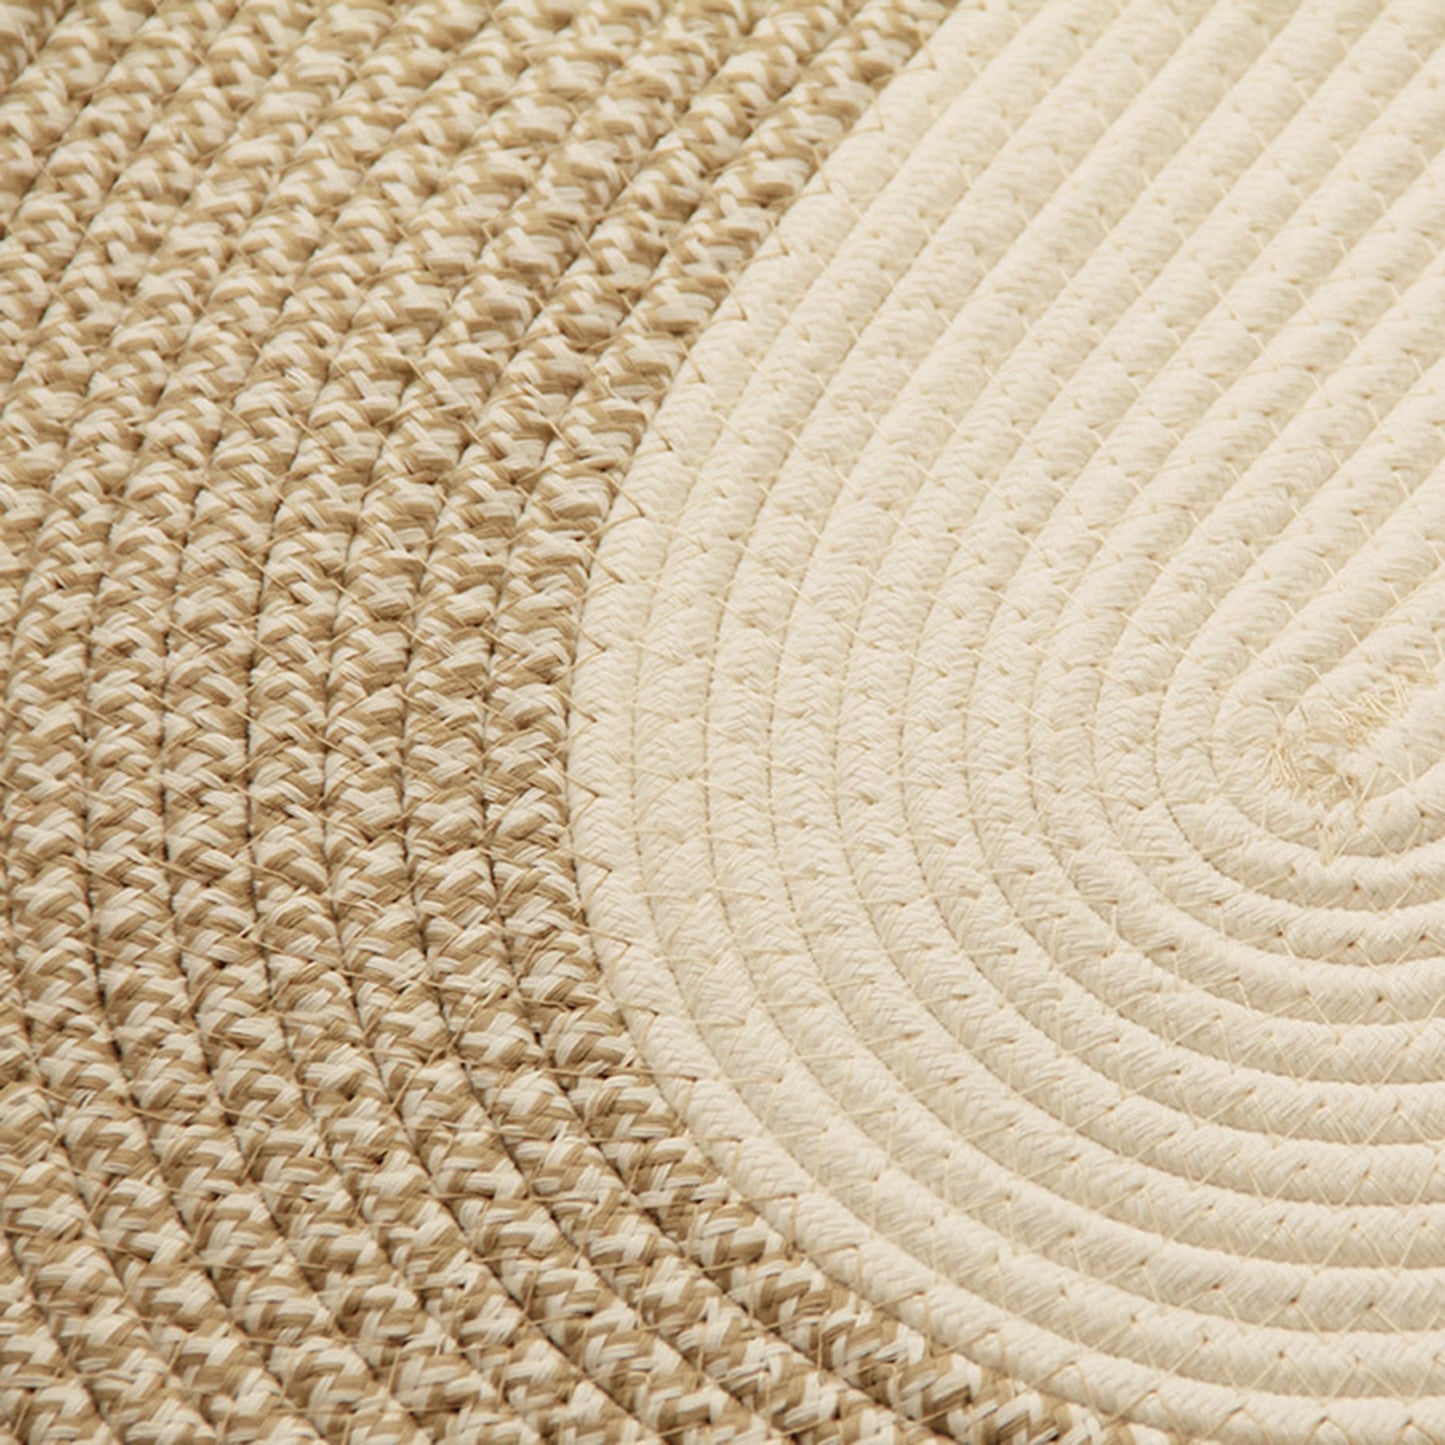 Hand-woven Floor Mat in Beige / Cream